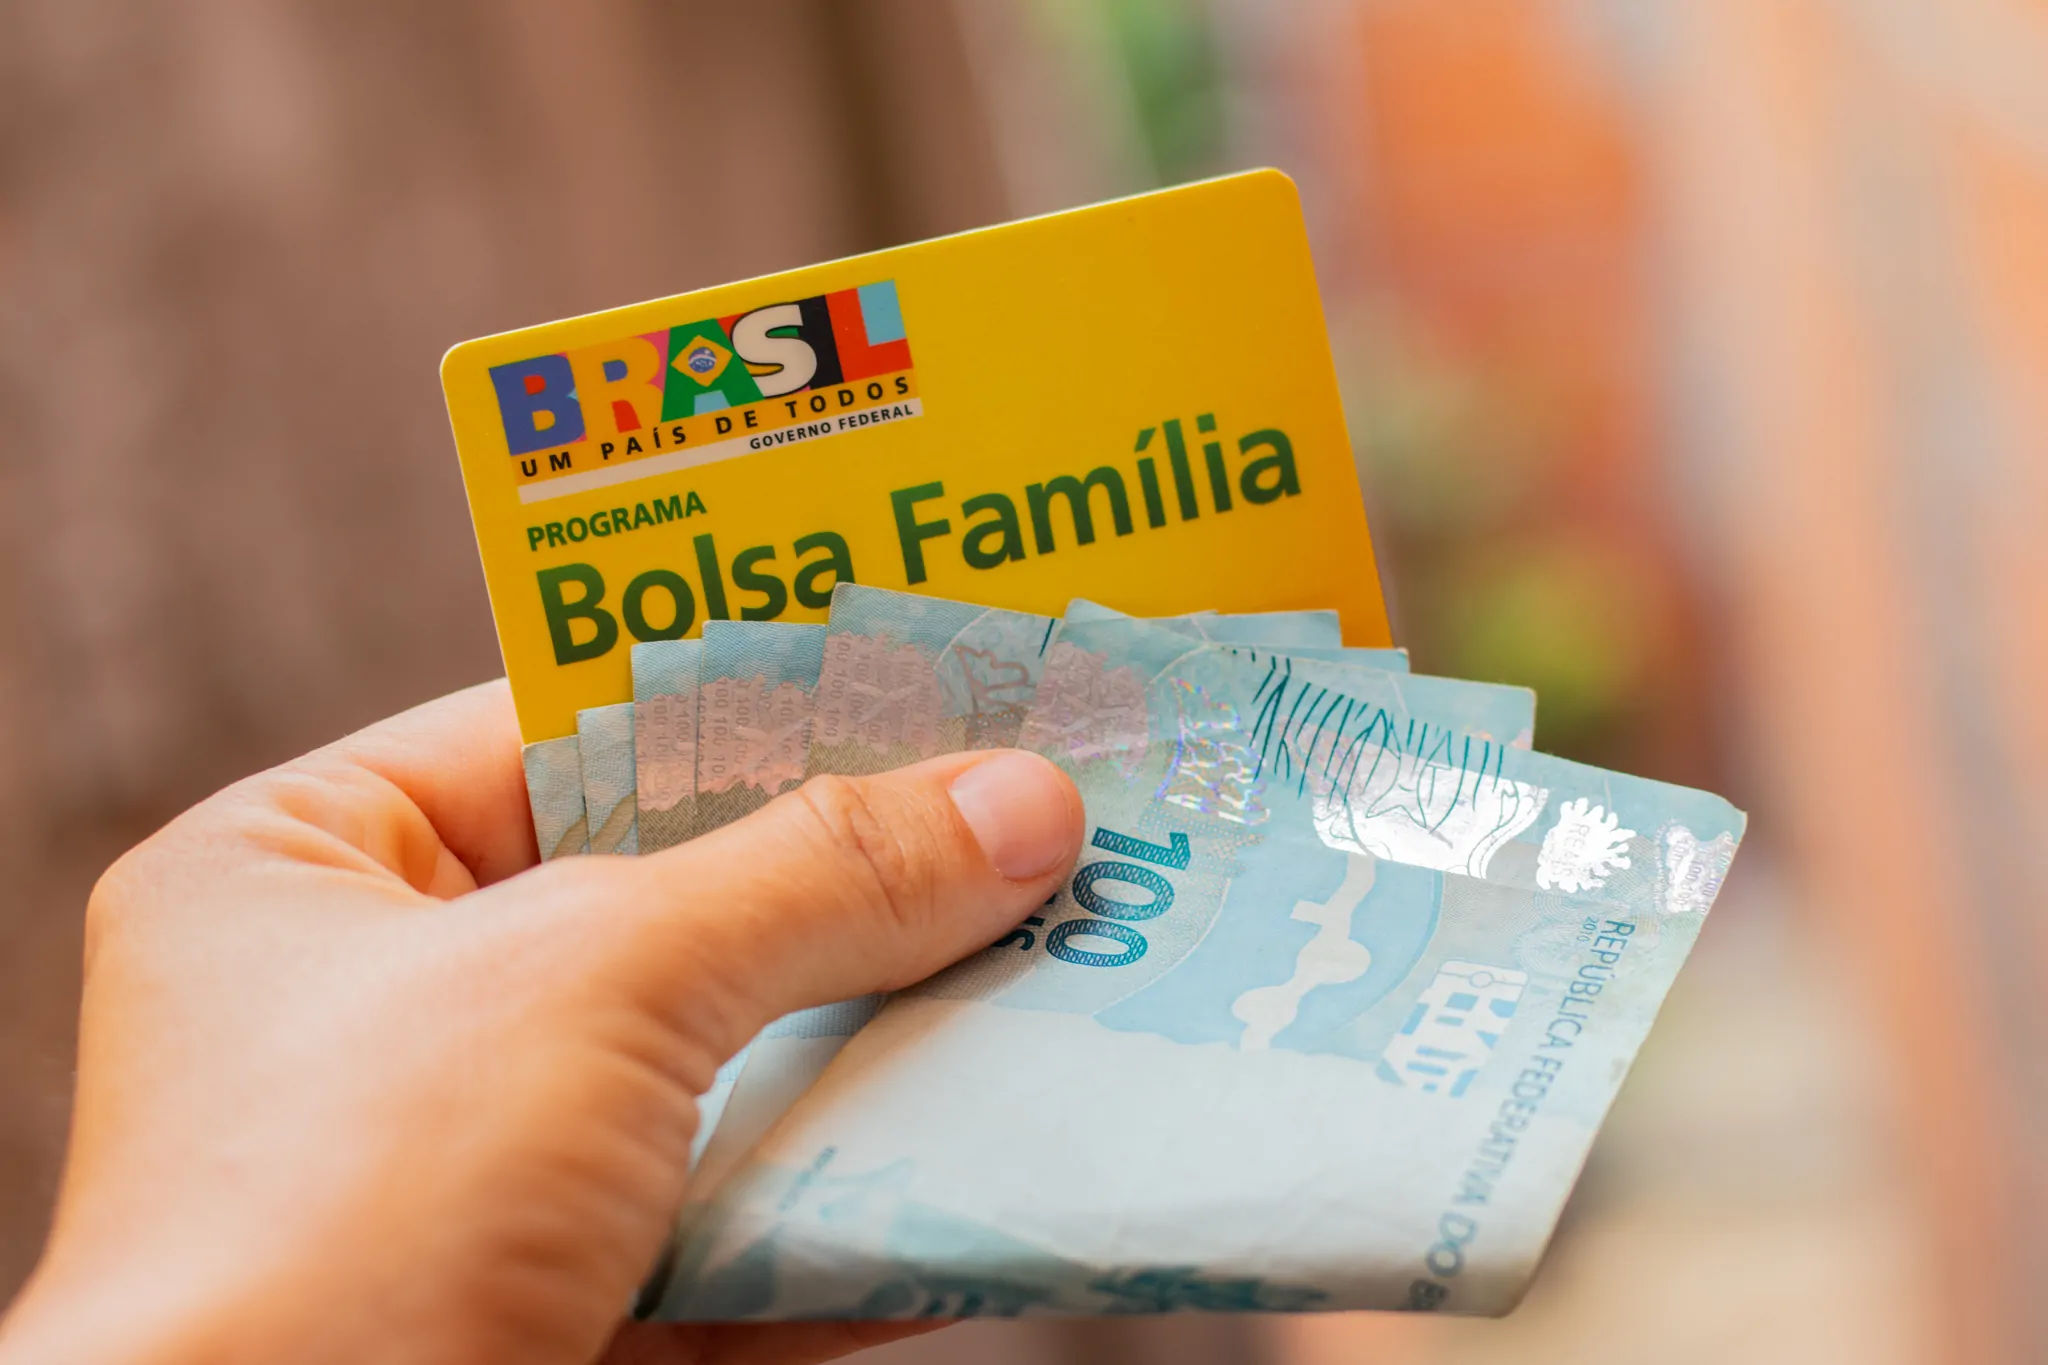 VITÓRIA! Bolsa Família de setembro terá extra de R$ 200 na mensalidade